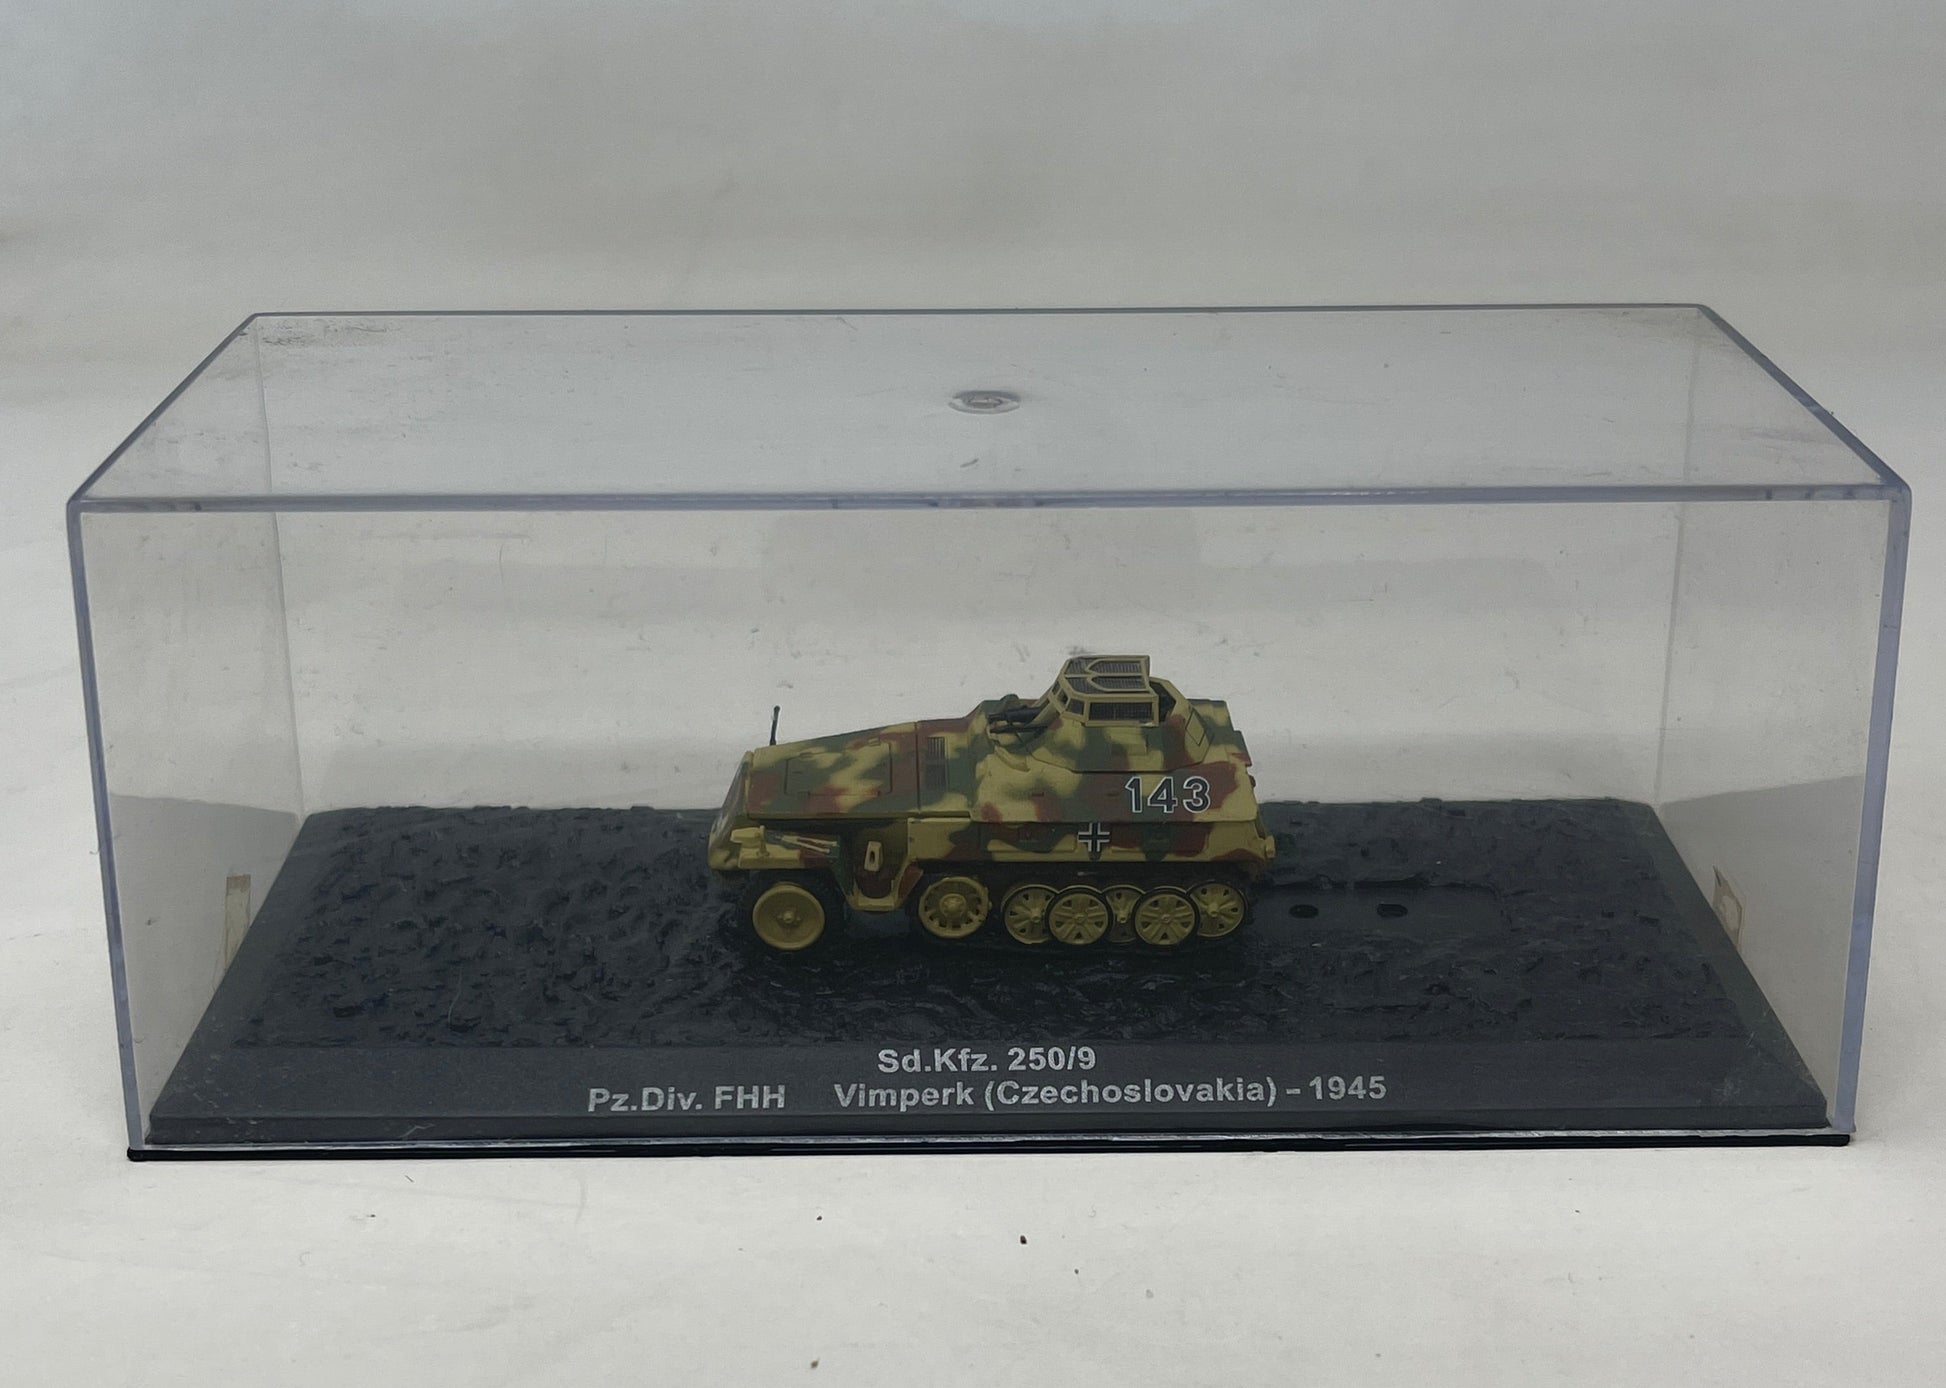 1/72 Scale Panzer Sd.Kfz. 250/9 Pz.Div.FHH Vimperk (Czechoslovakia) - 1945